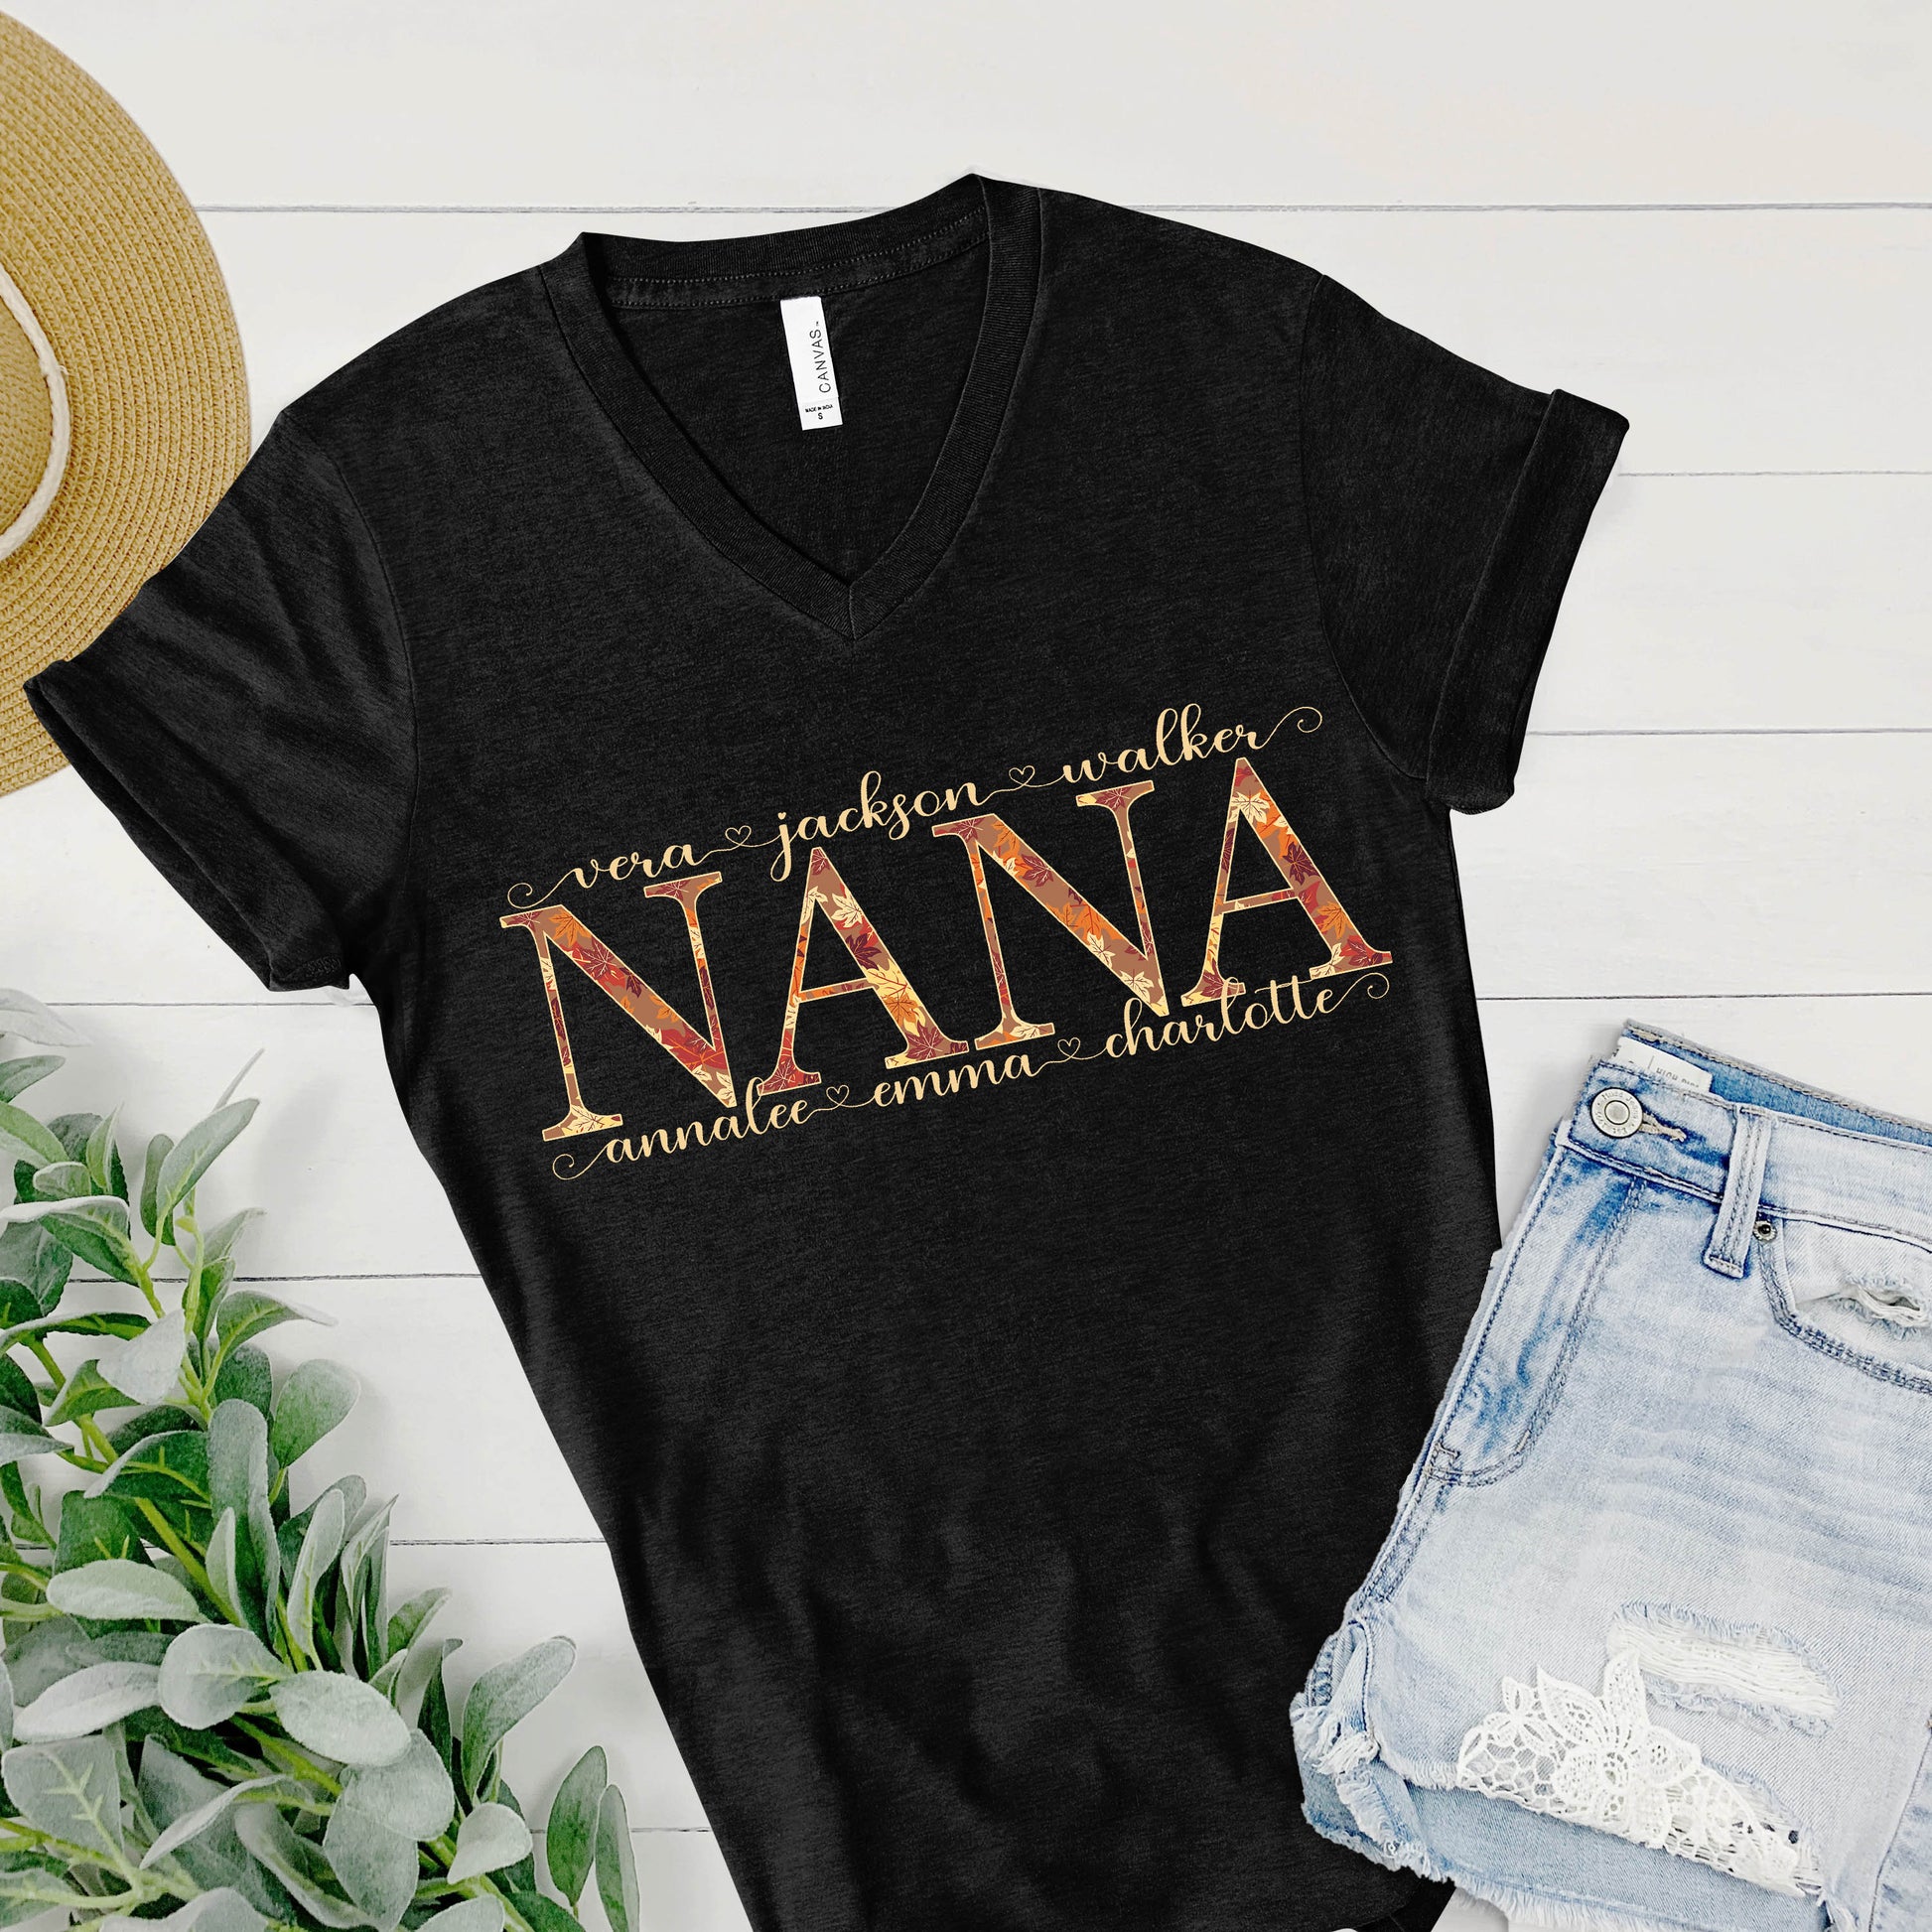 Nana Fall Shirt Kids Names Personalized Mom Grandma GiGi Auntie Mama Shirt Custom Tee Mother’s Day Gift Birthday Gift Grandkids Grandchildren - Amazing Faith Designs